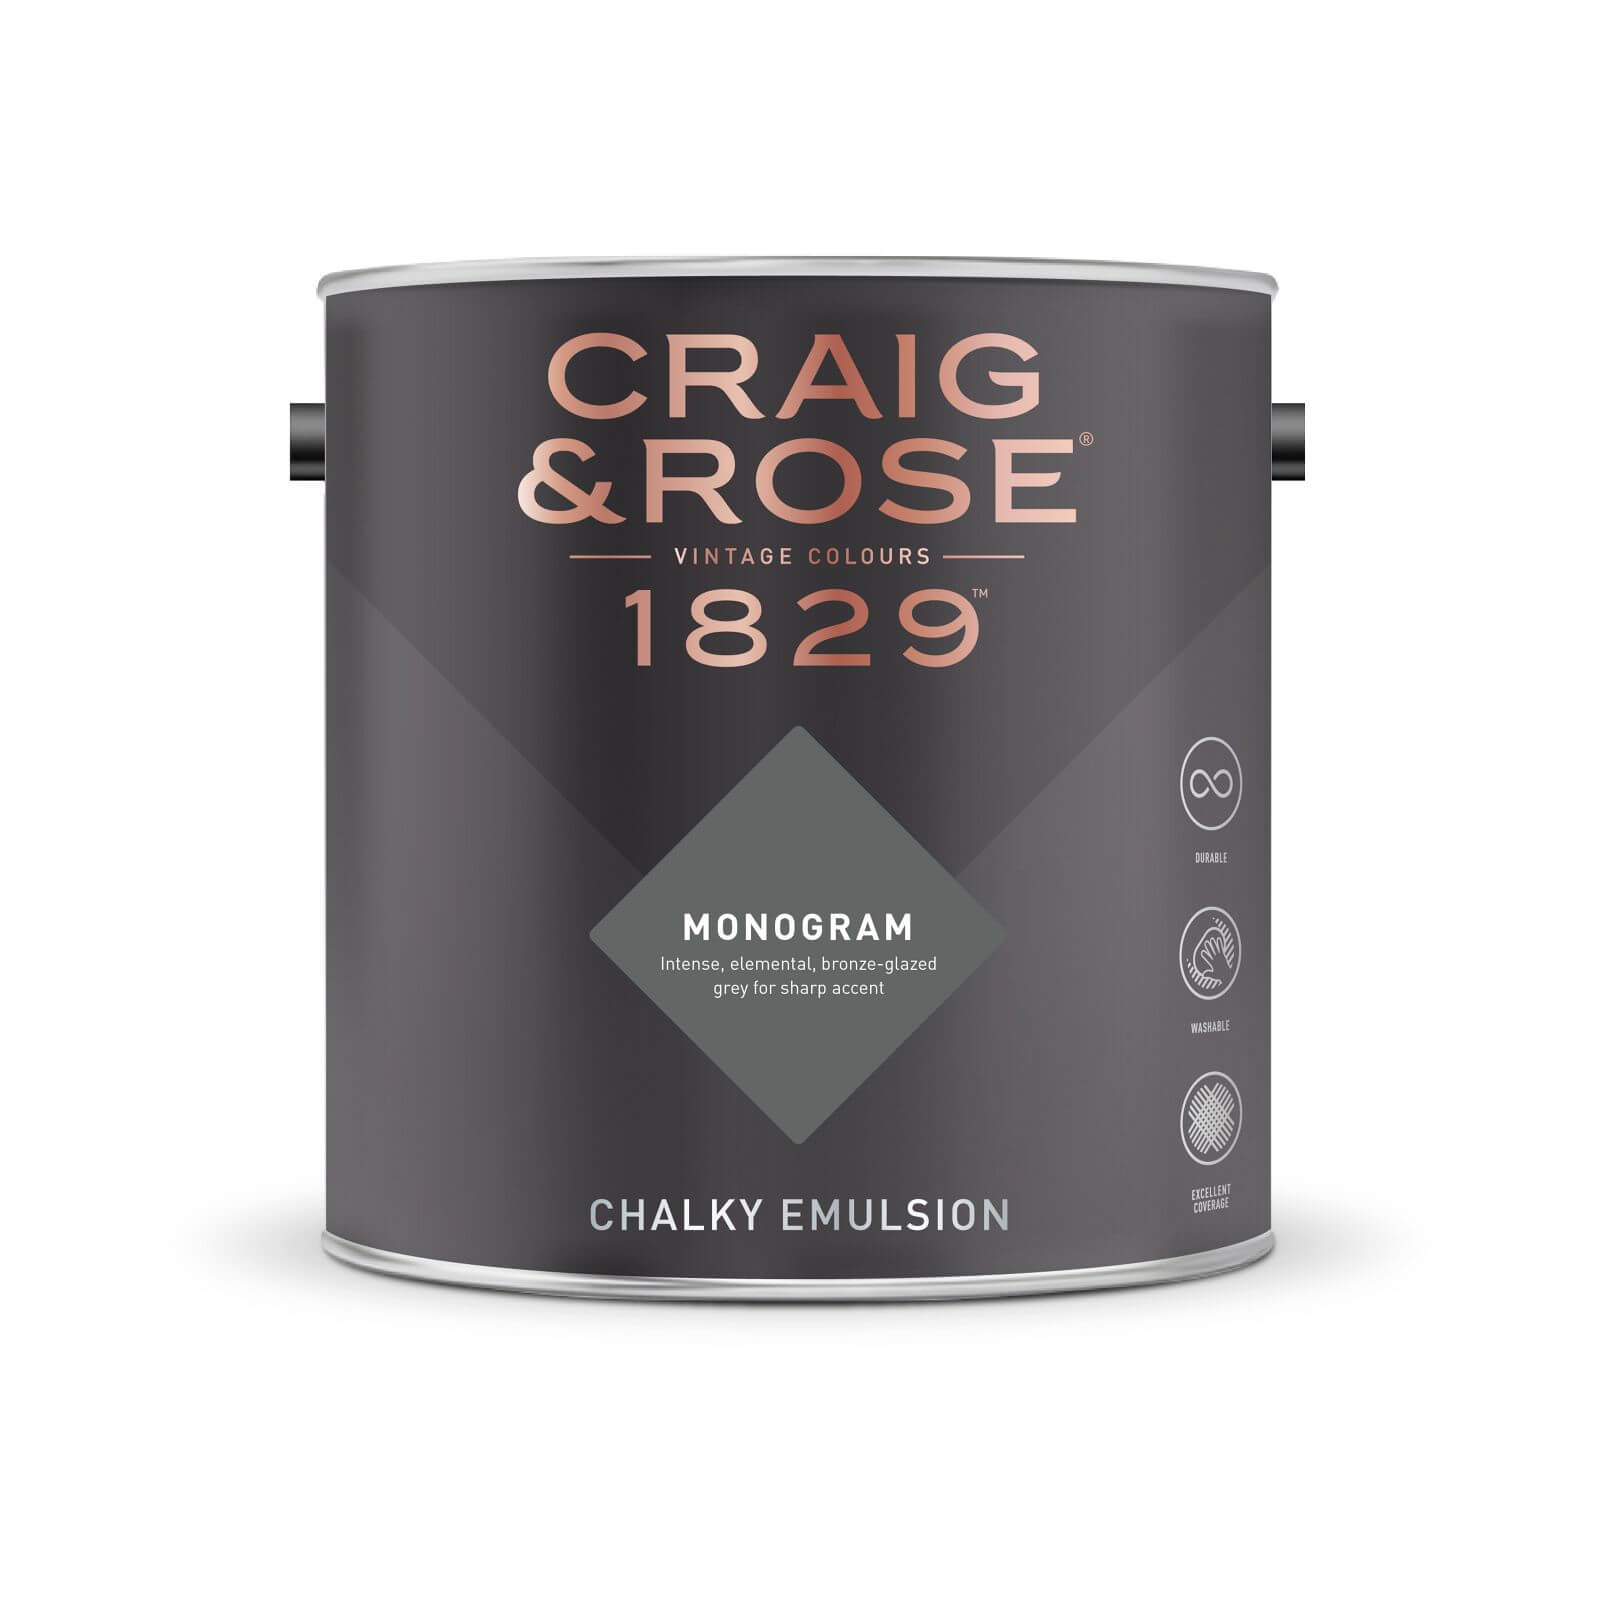 Craig & Rose 1829 Chalky Emulsion Paint Monogram - Tester 50ml